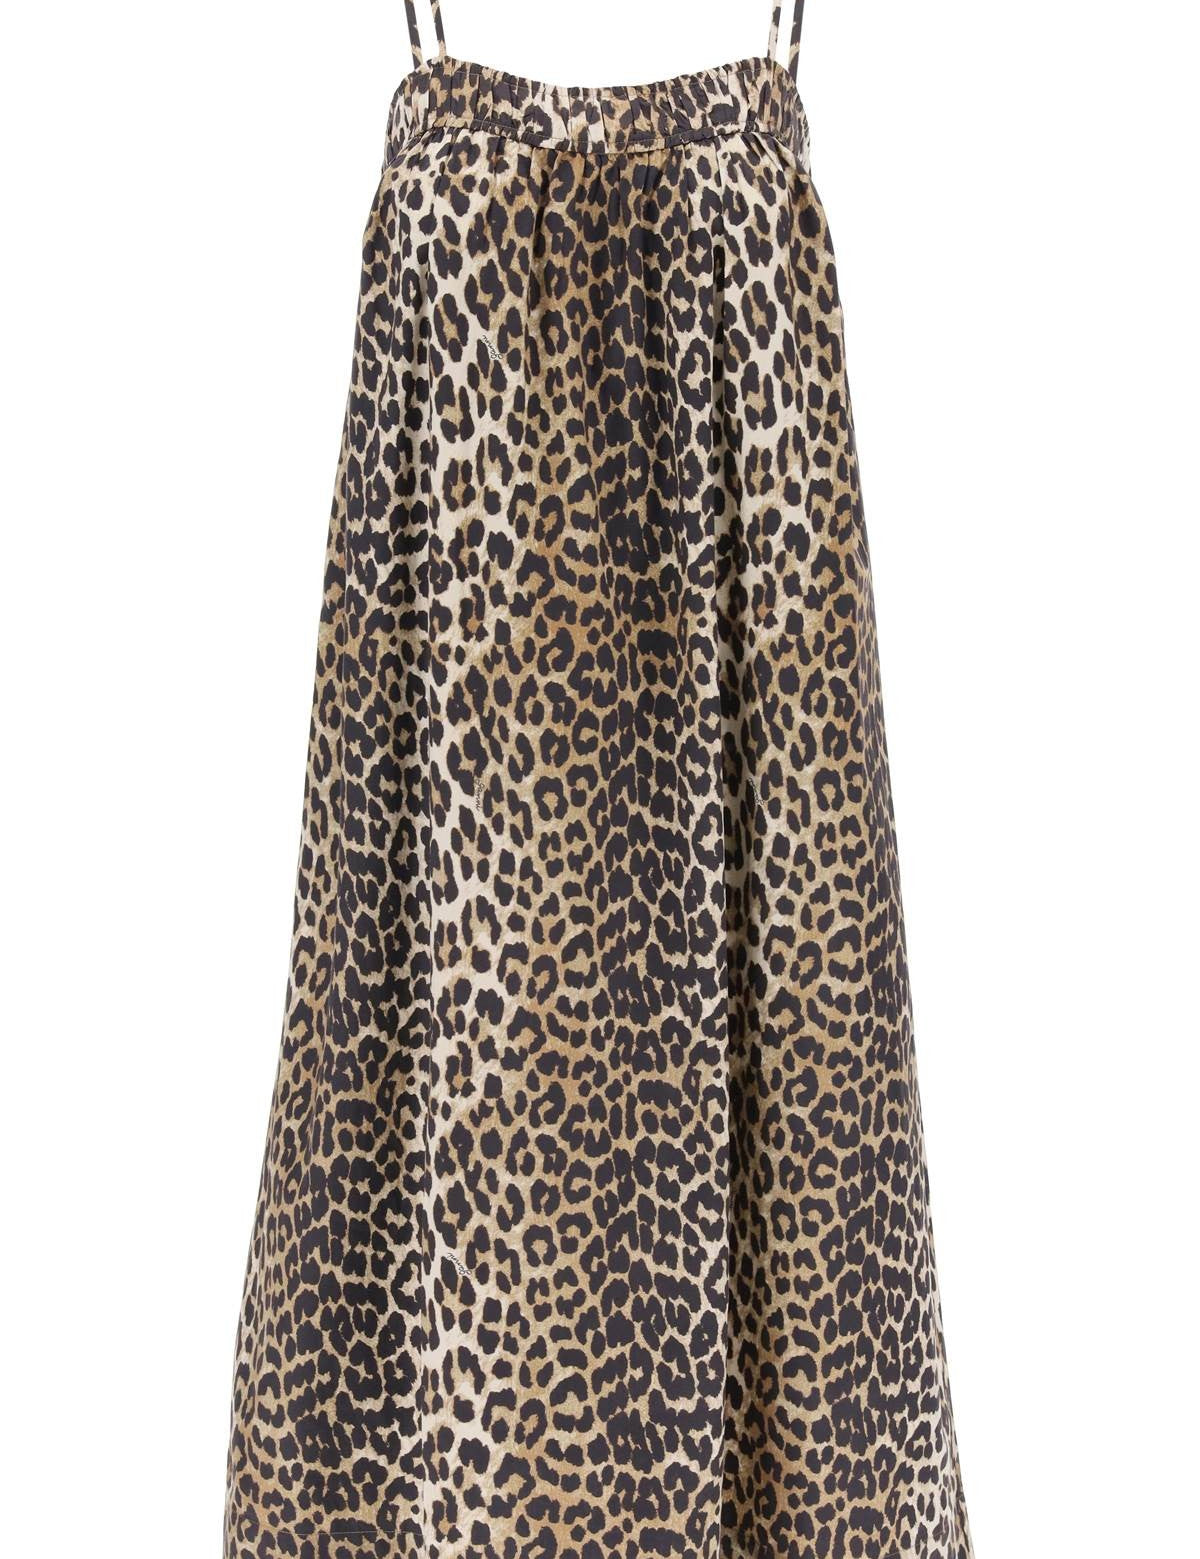 ganni-leopard-print-flared-midi-dress-with.jpg